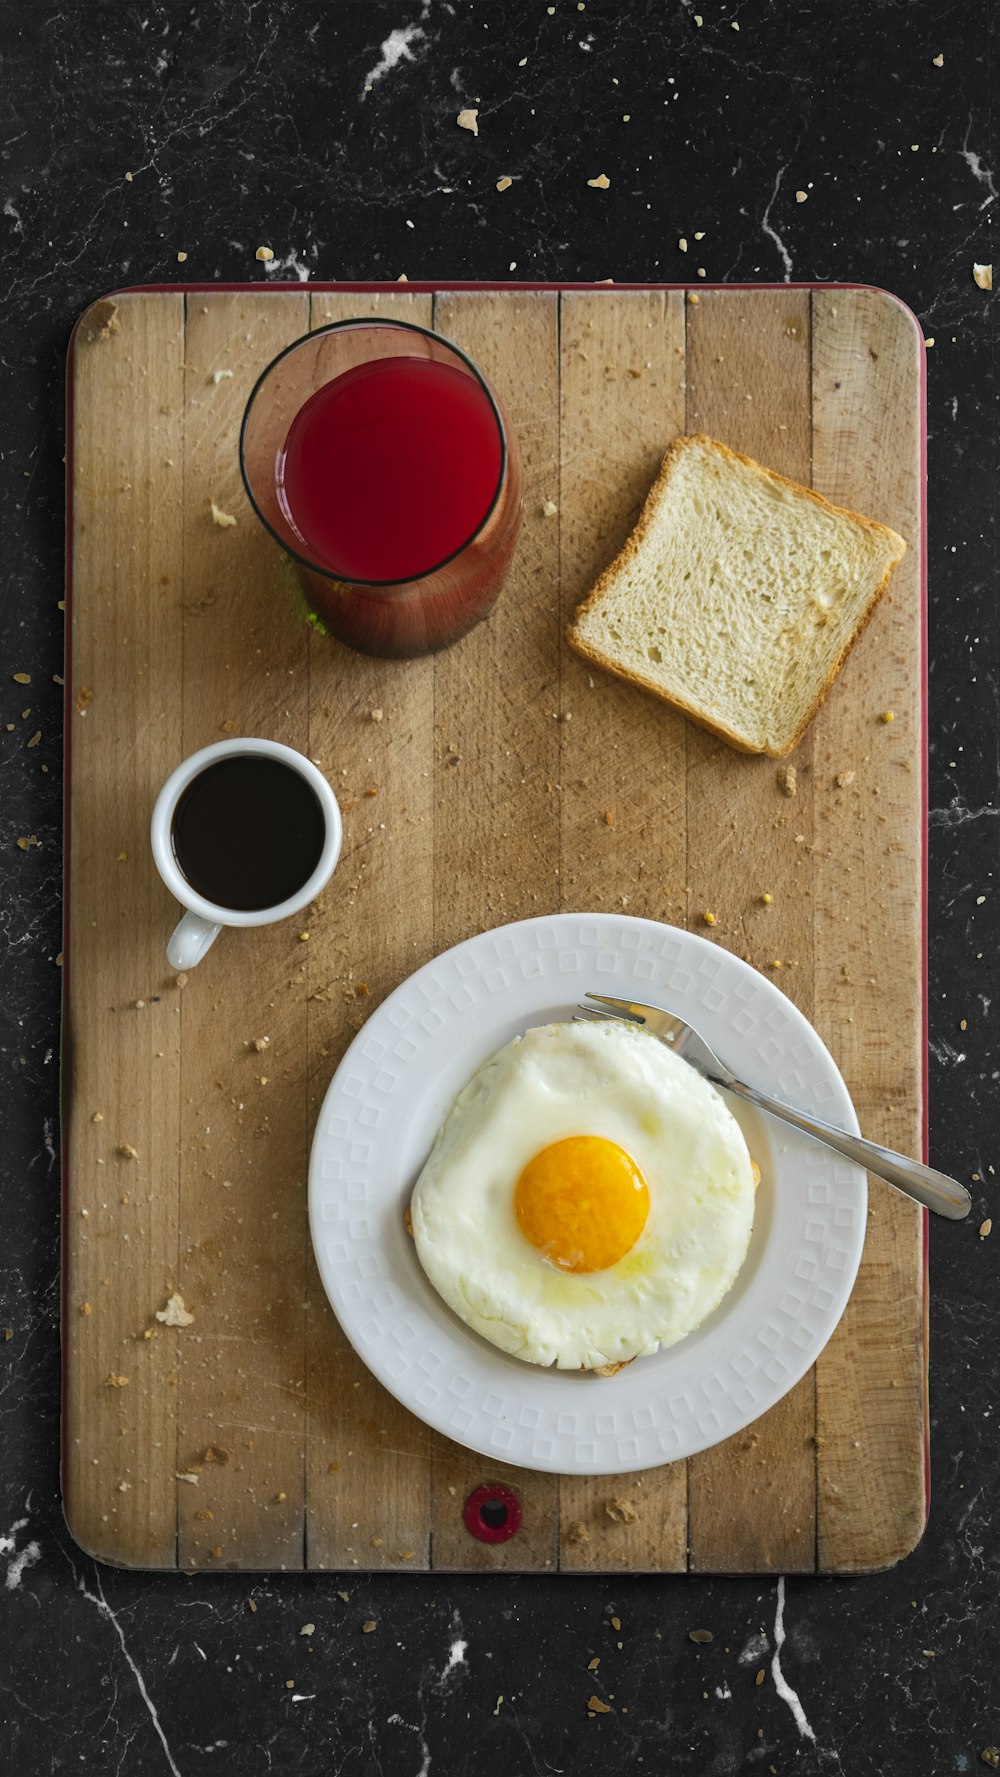 透明なコップに入った赤い液体の横の白いセラミックの丸い皿に卵